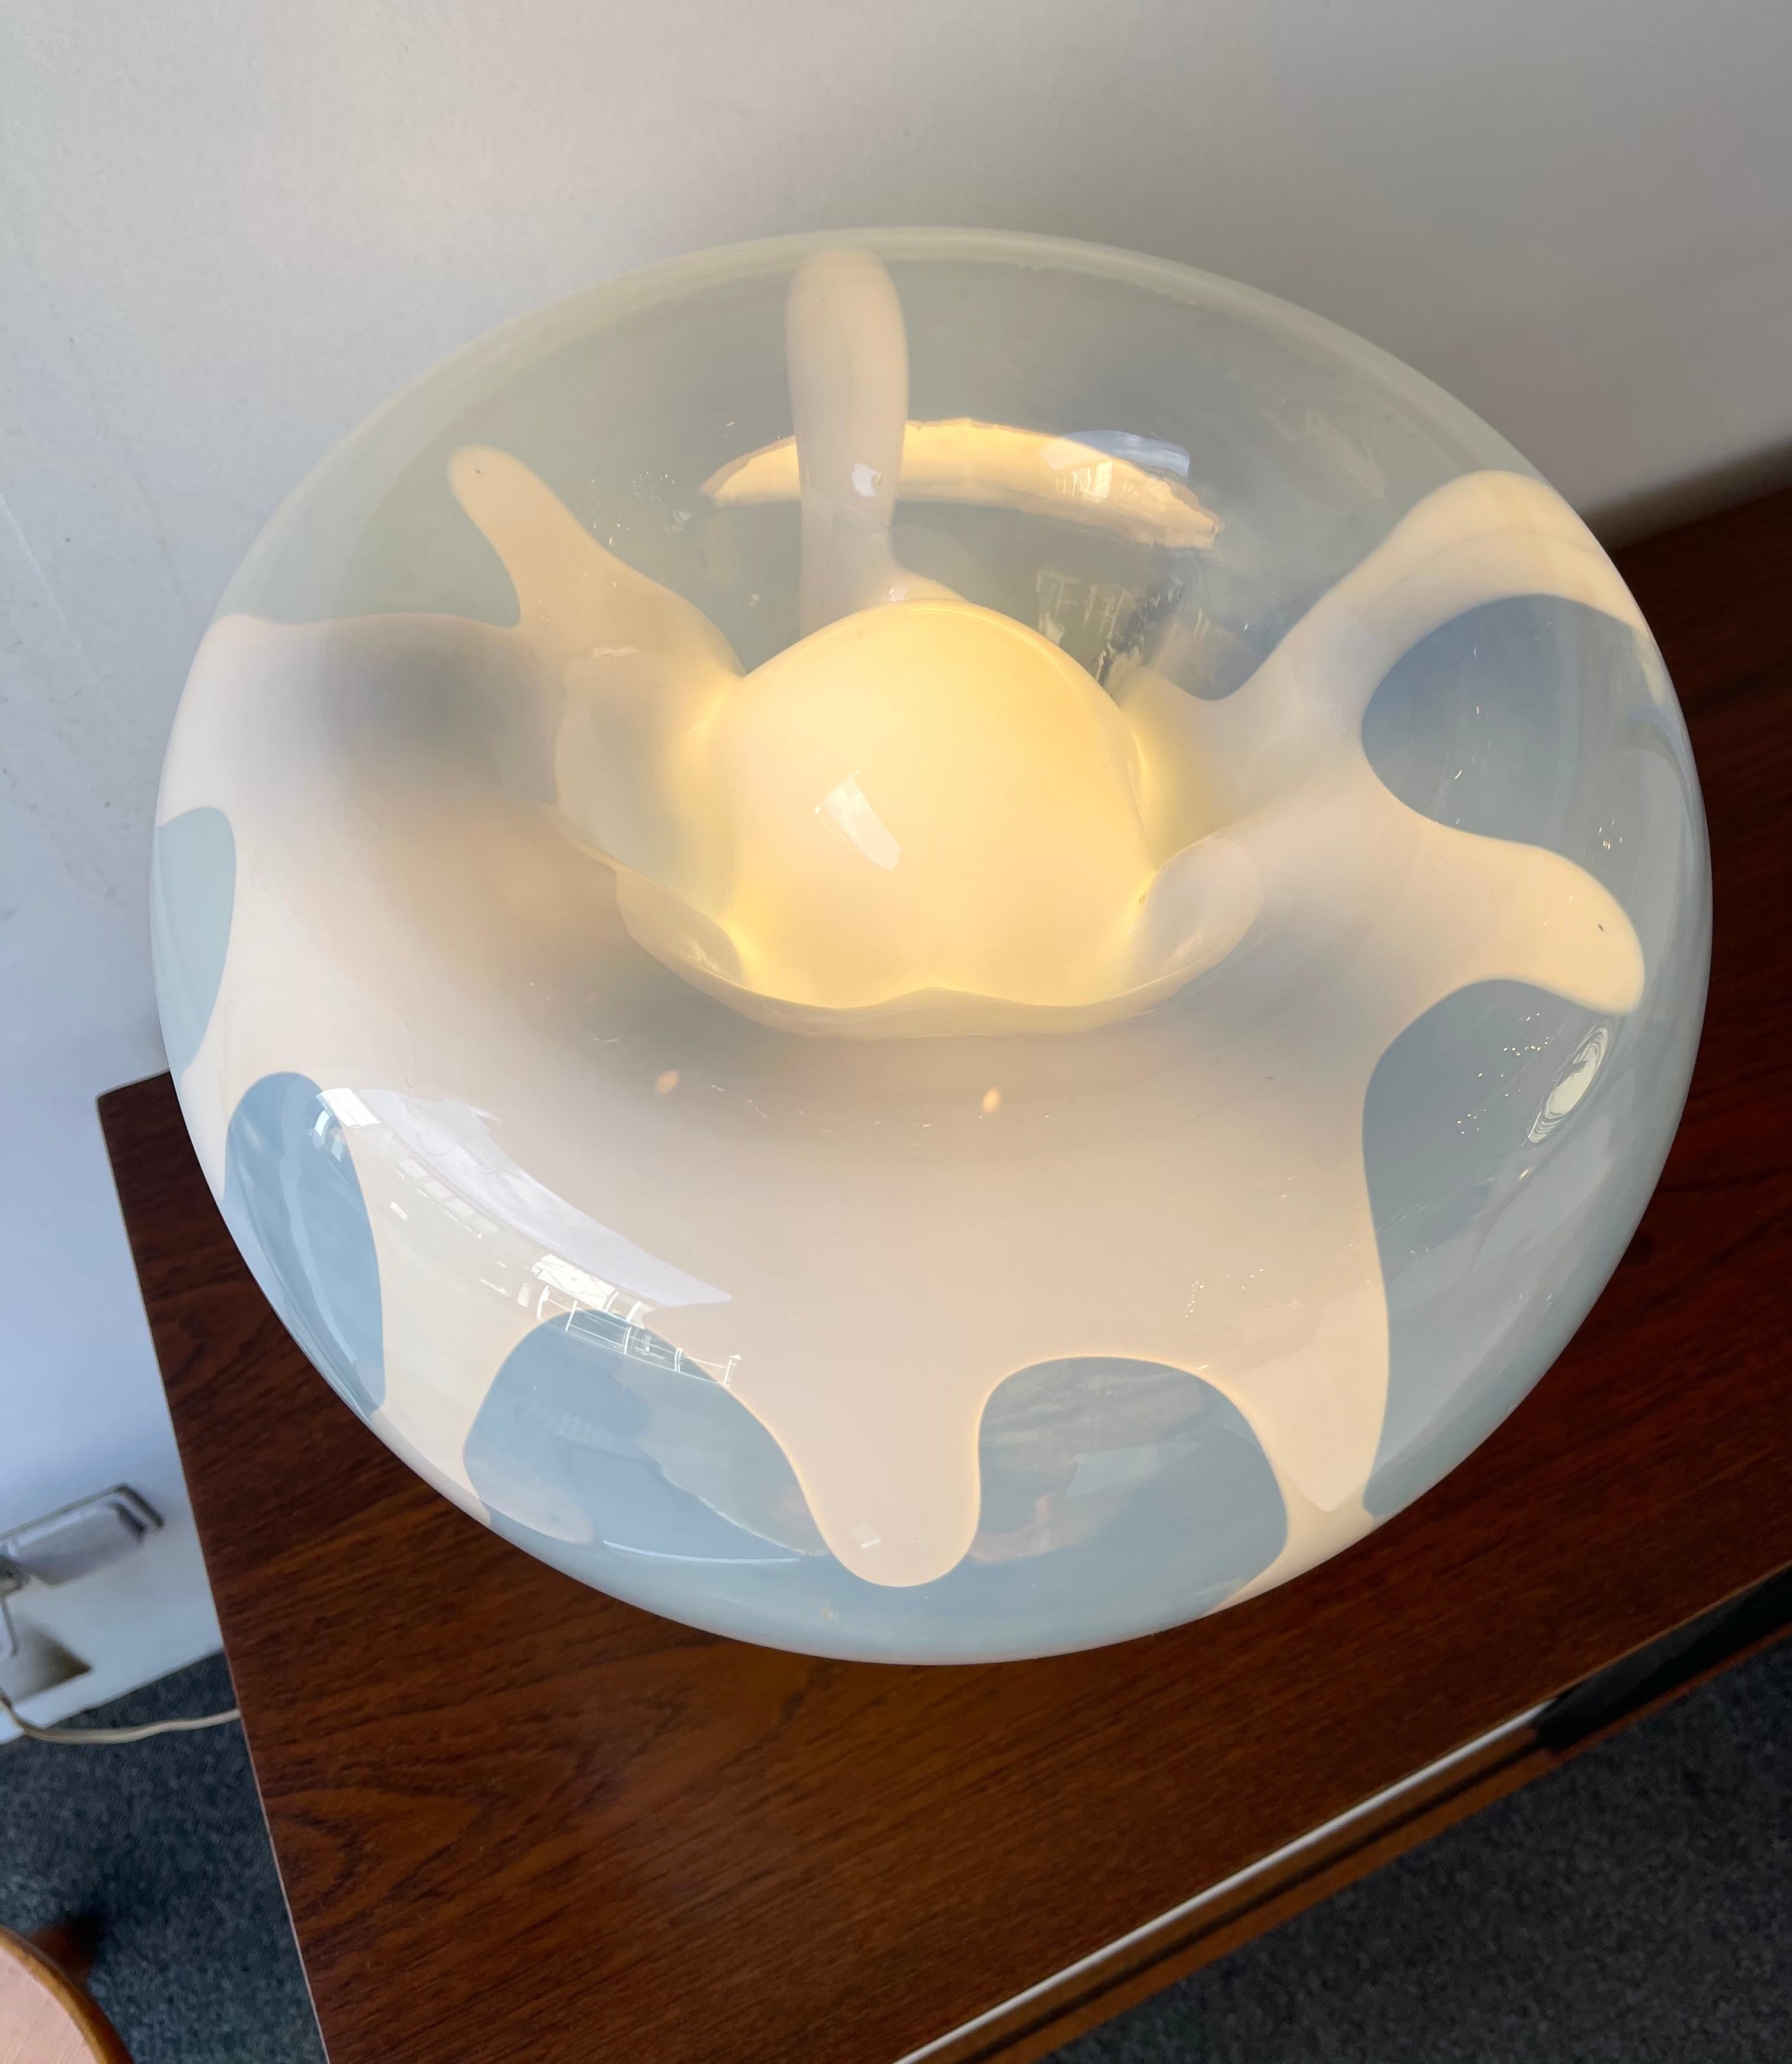 Rare table or desk lamp in opal blown murano glass and metal chrome by the master glass artist Toni Zuccheri for the manufacture VeArt. Famous design like Carlo Aldo Nason for Mazzega, Venini, Vistosi, La Murrina, Poliarte, Barbini.